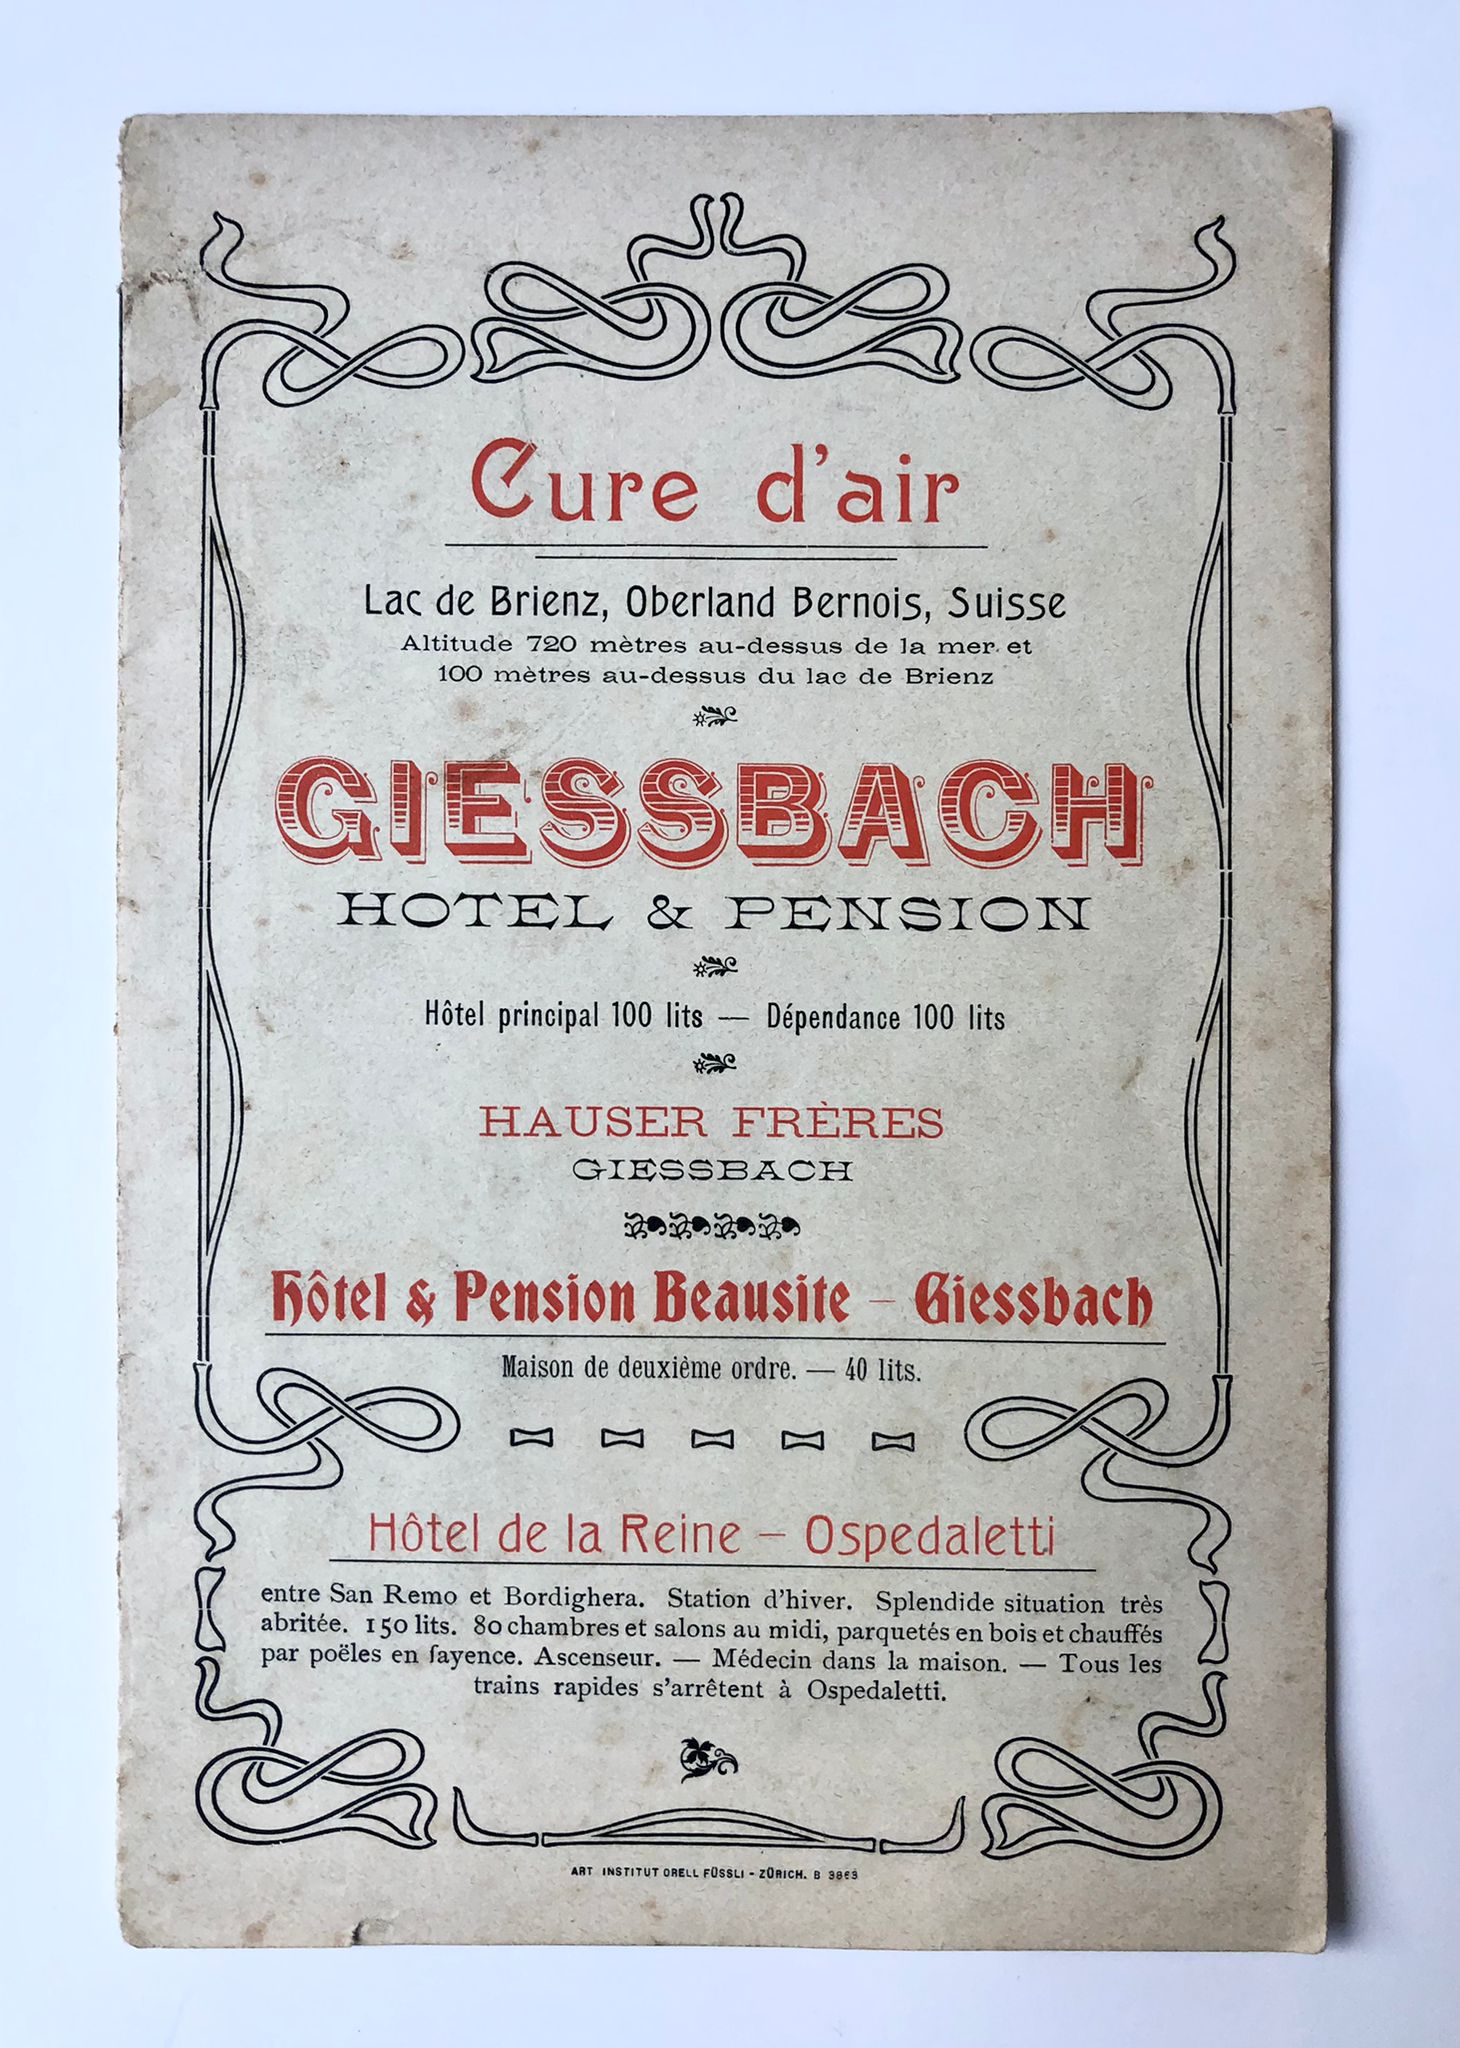 [Switzerland] Cure d’air, Giessbach Hotel & Pension, Hauser Frères, Giessbach, Art. Institute Orell füssli, Zürich, 16 pp.